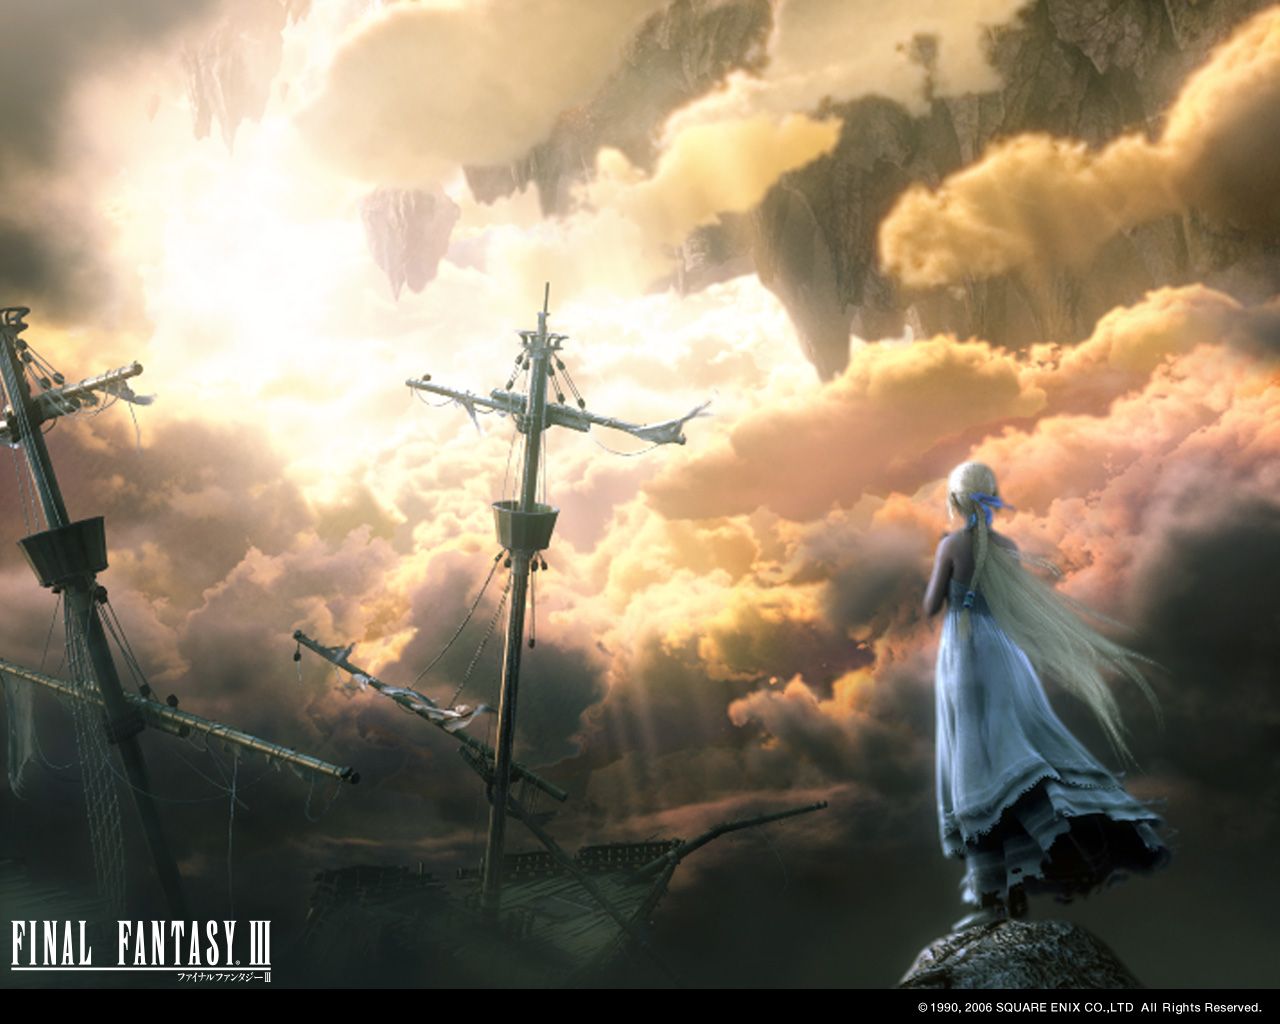 Mega post Final Fantasy Wallpapers Re Actualizado - Taringa